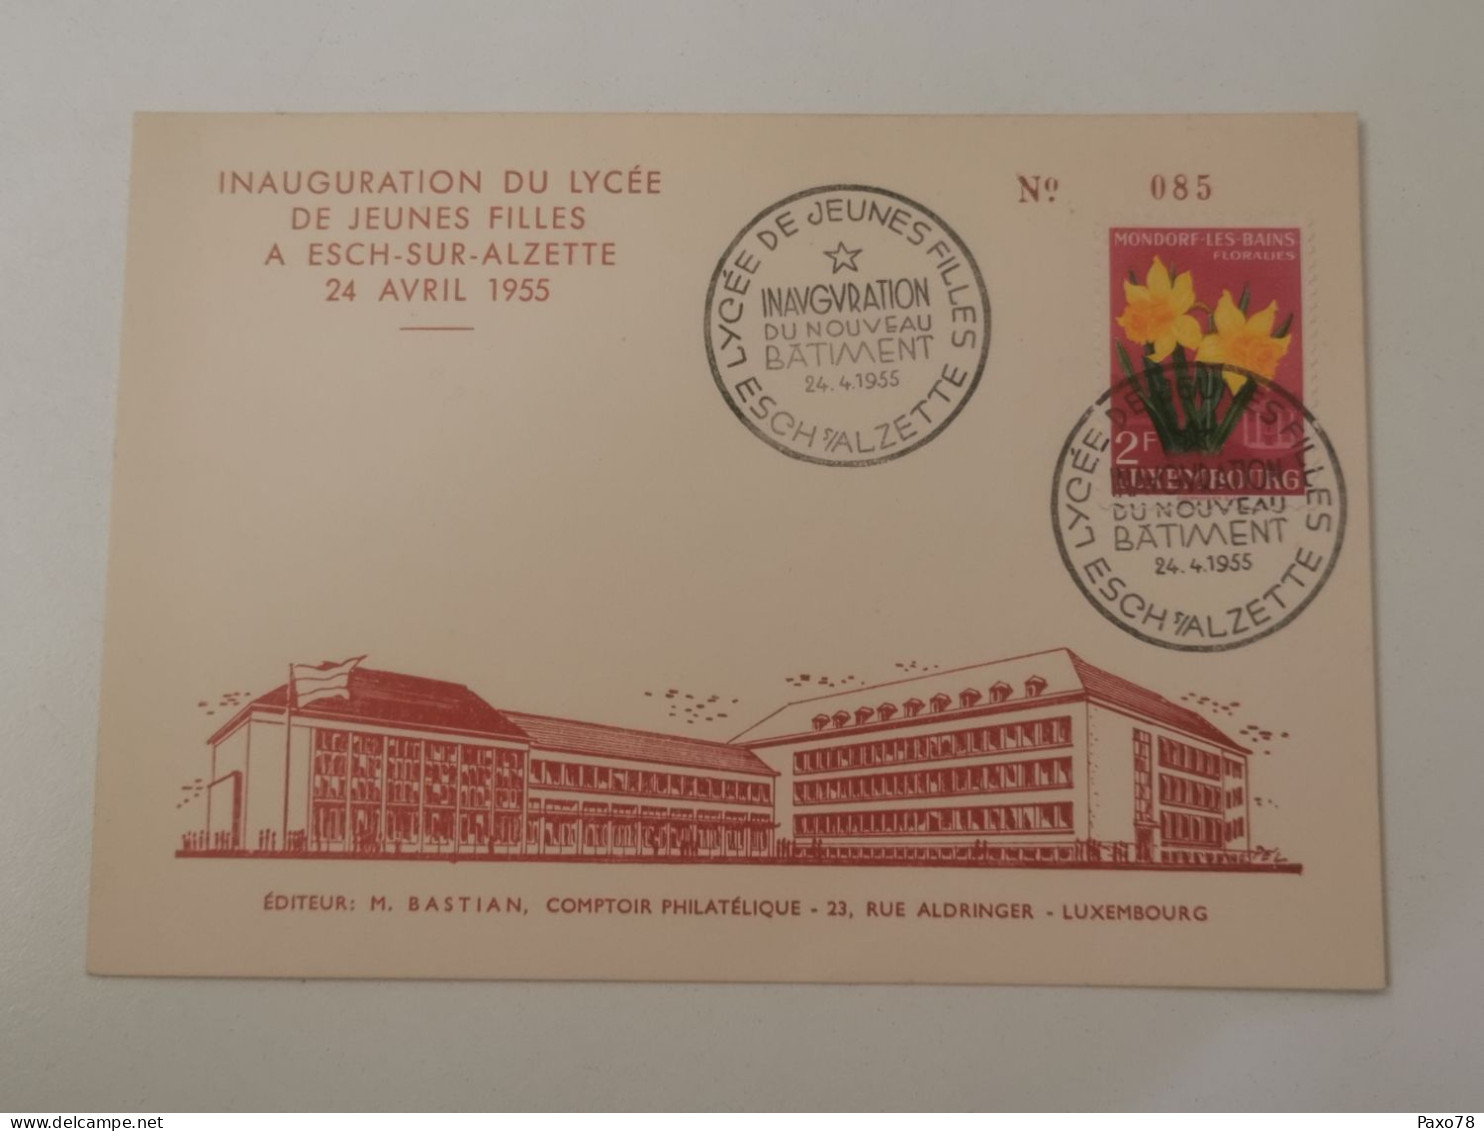 Inauguration Du Lycée De Jeunes Filles à Esch-Alzette 1955 - Cartes Commémoratives